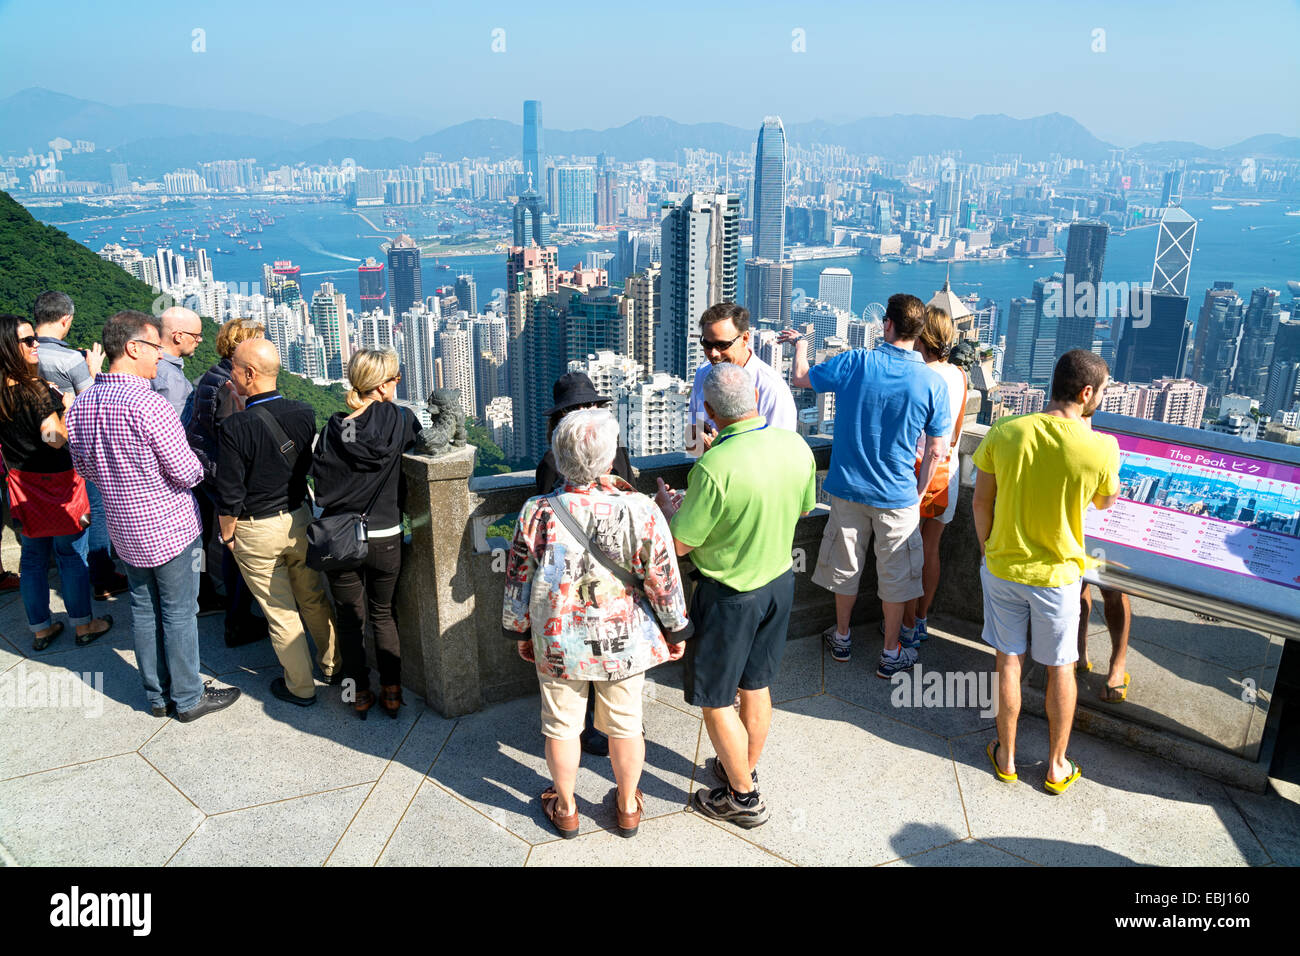 Hong Kong, Hong Kong SAR -November 15, 2014: Tourists at Victoria Peak in Hong Kong. Victoria Peak is one of the most popular sp Stock Photo